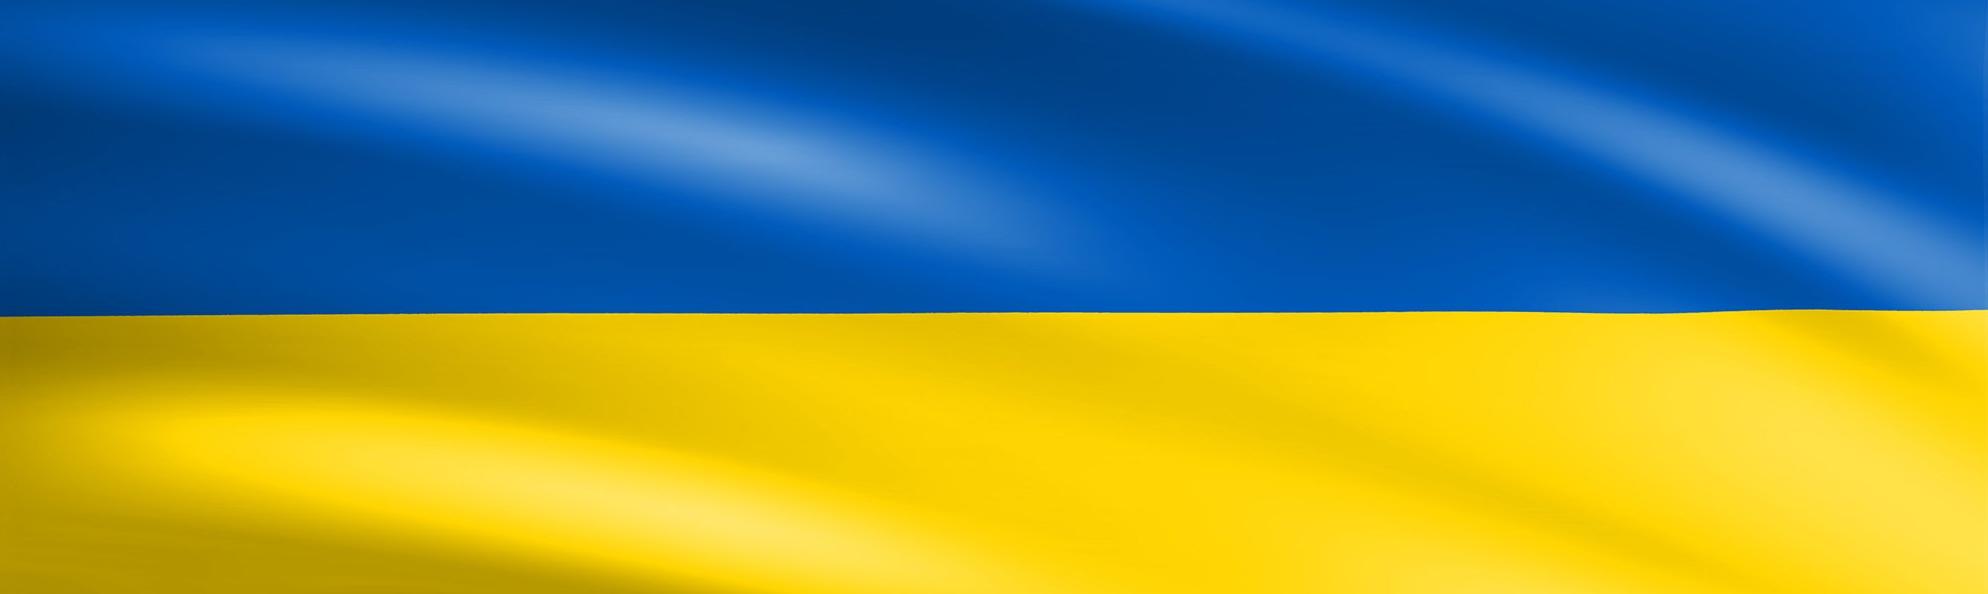 Україна - Єдина